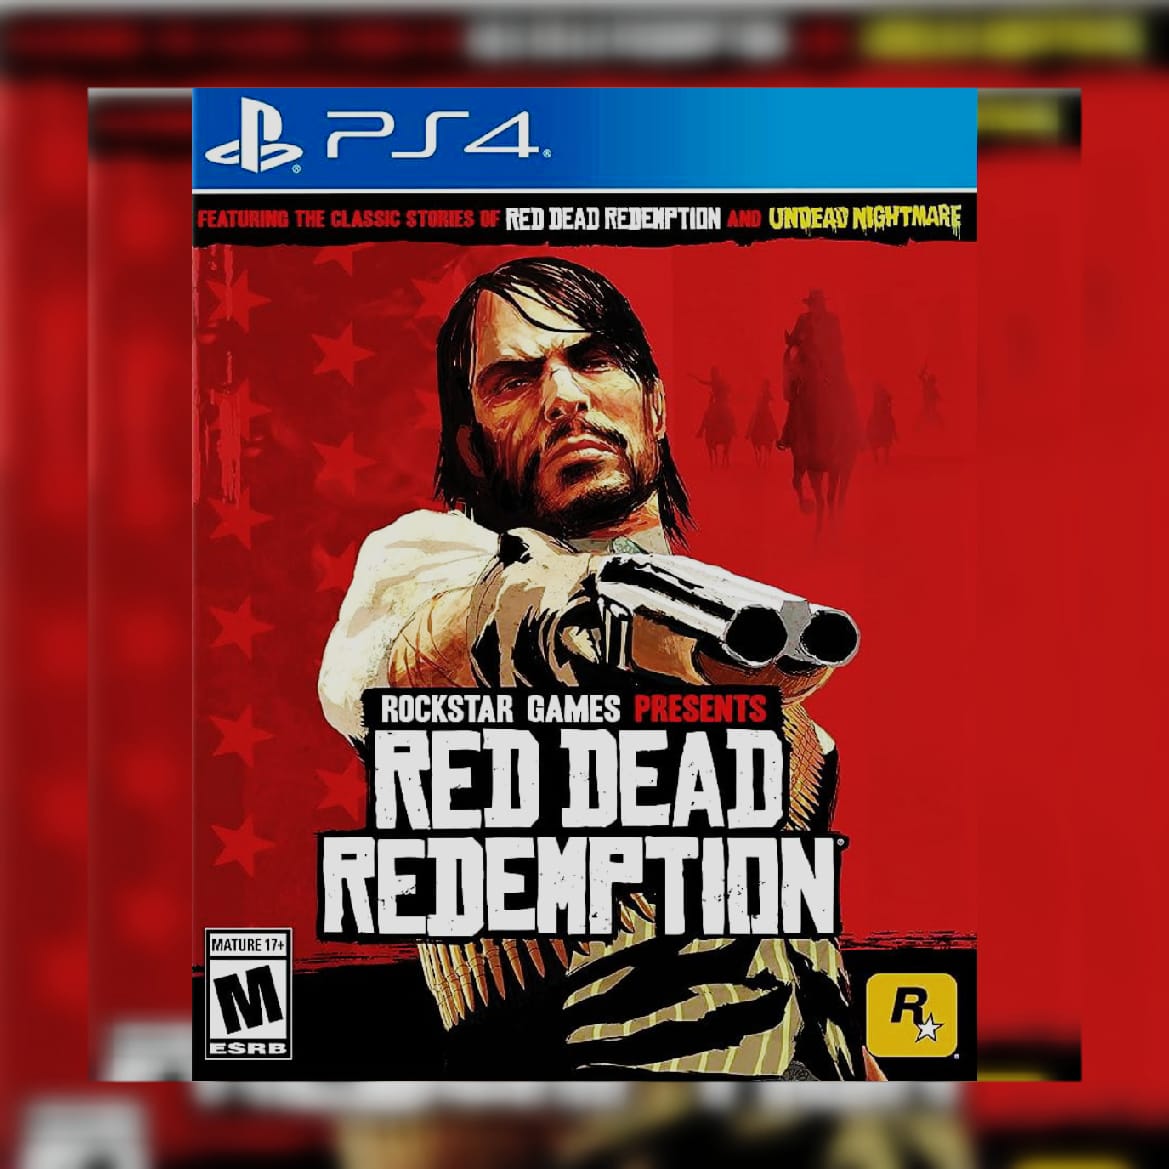 Red Dead Redemption 2 divulga conteúdo antecipado para PS4